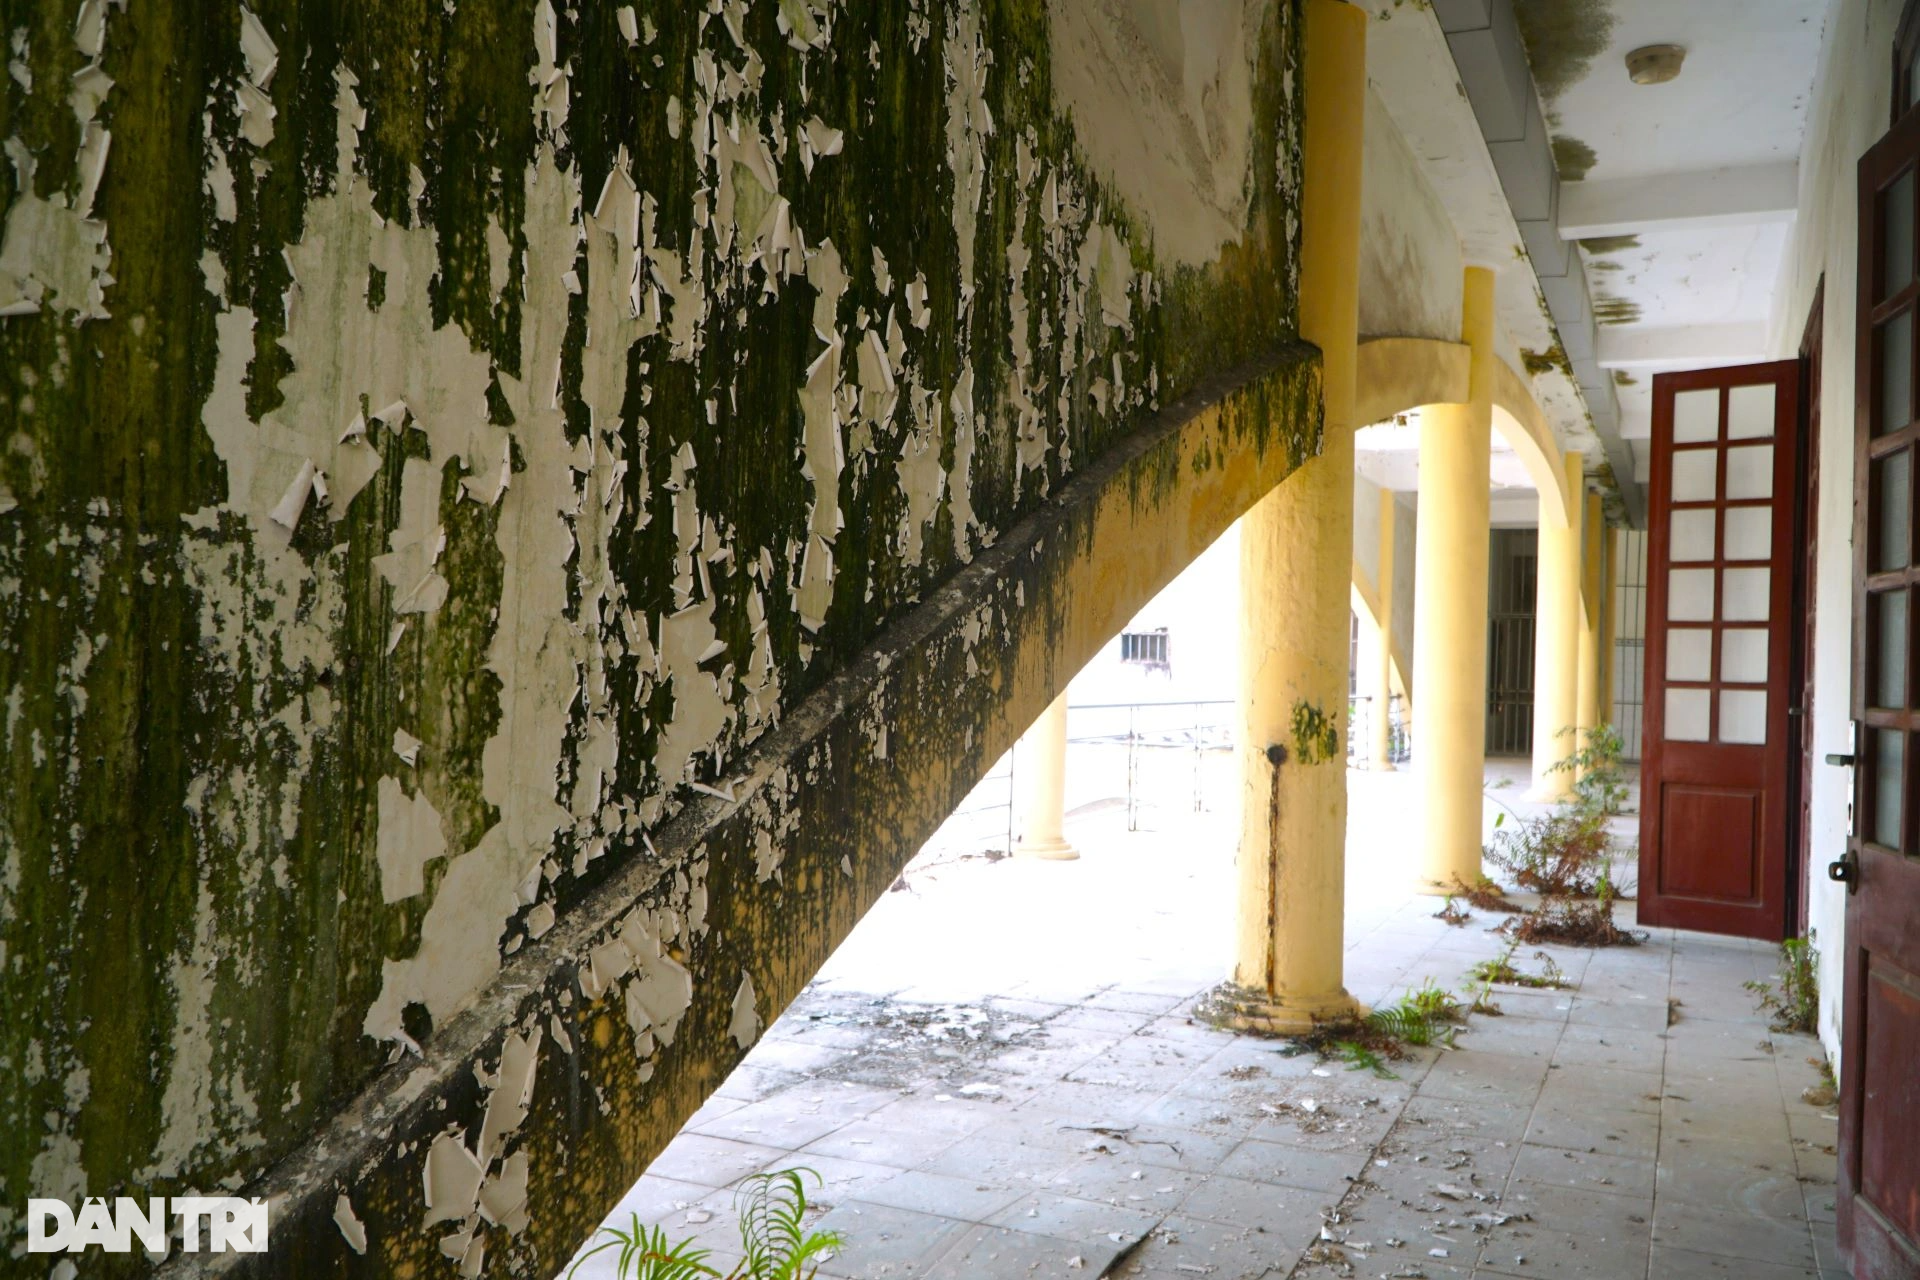 Hàng loạt trụ sở cũ bỏ hoang trên đại lộ đẹp nhất Thanh Hóa - 4